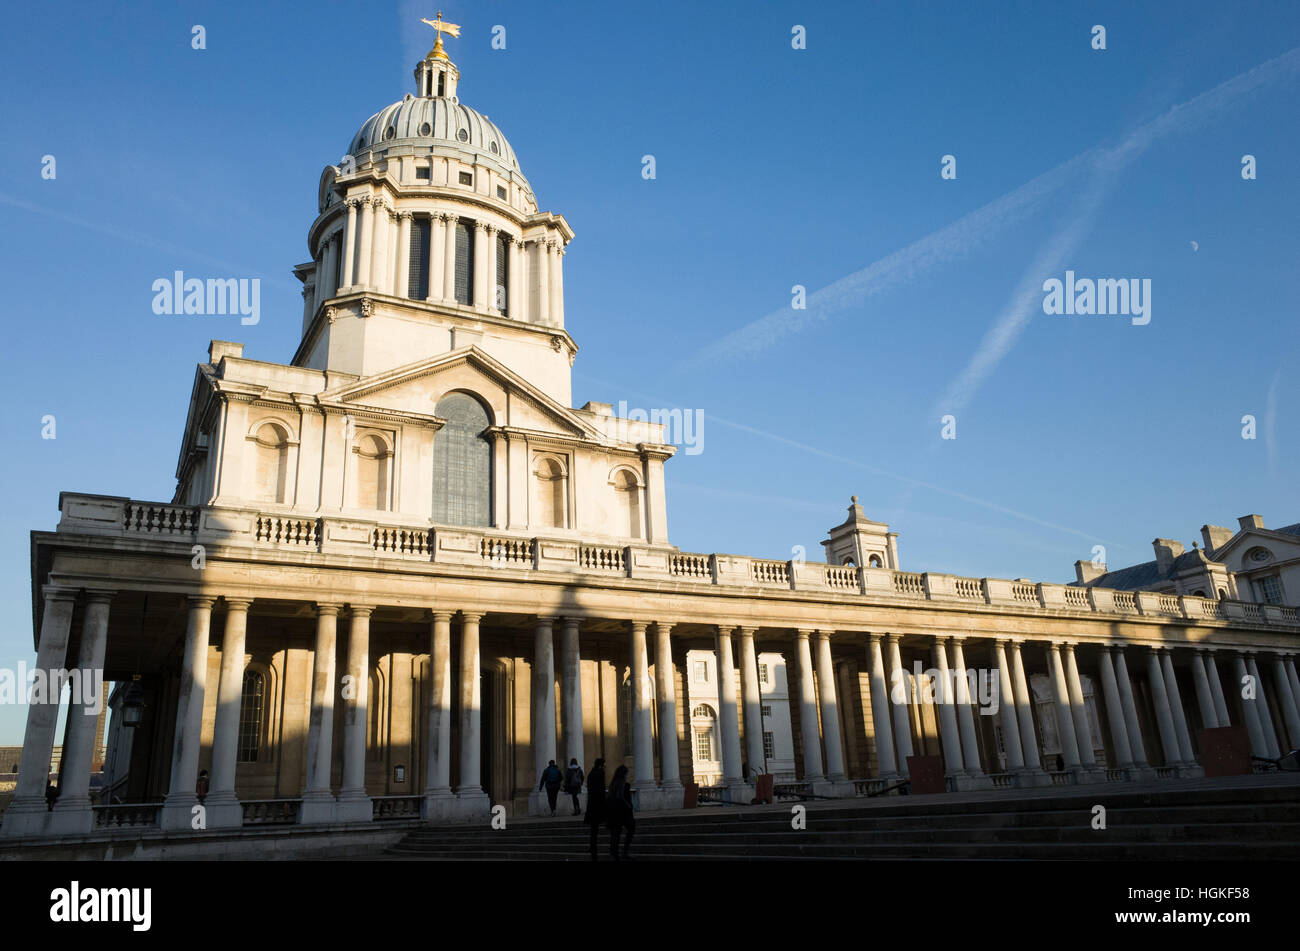 GV image de l'Université de Greenwich qui est sur le site de l'ancien Royal Navy College, Londres UK Banque D'Images